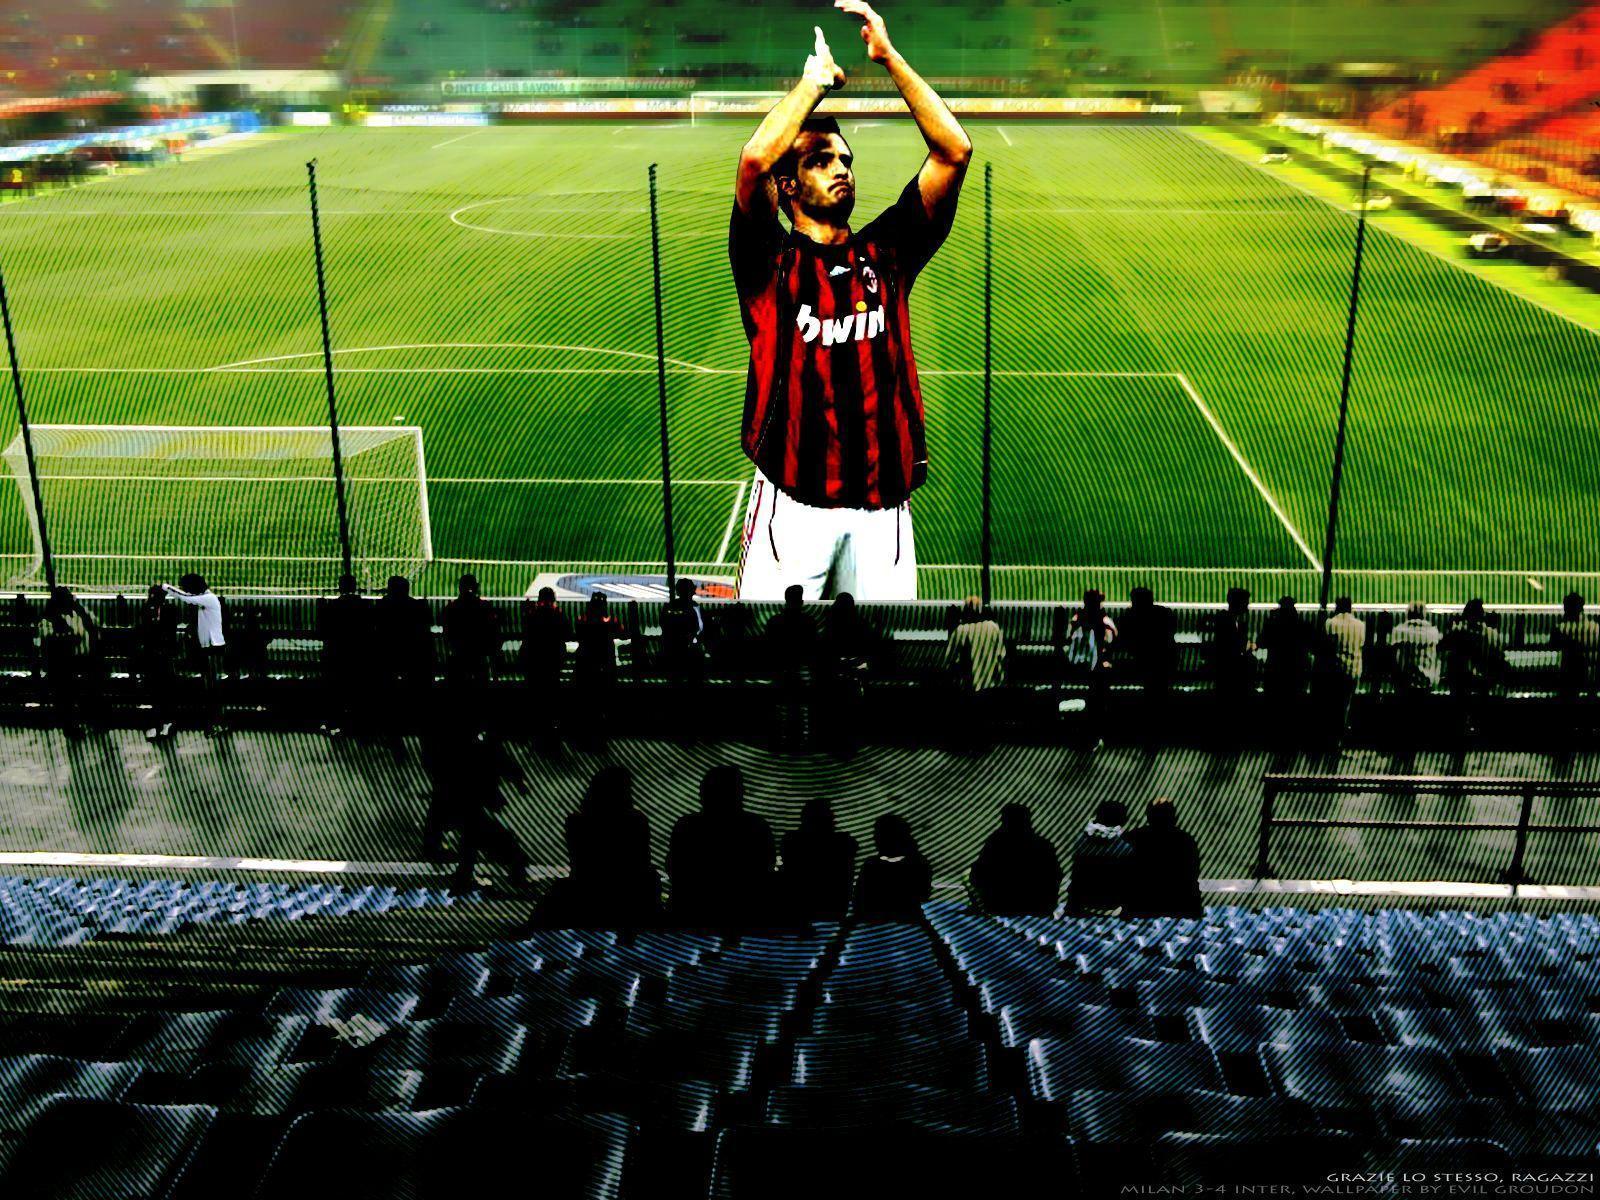 San Siro Milan 3 4 Inter